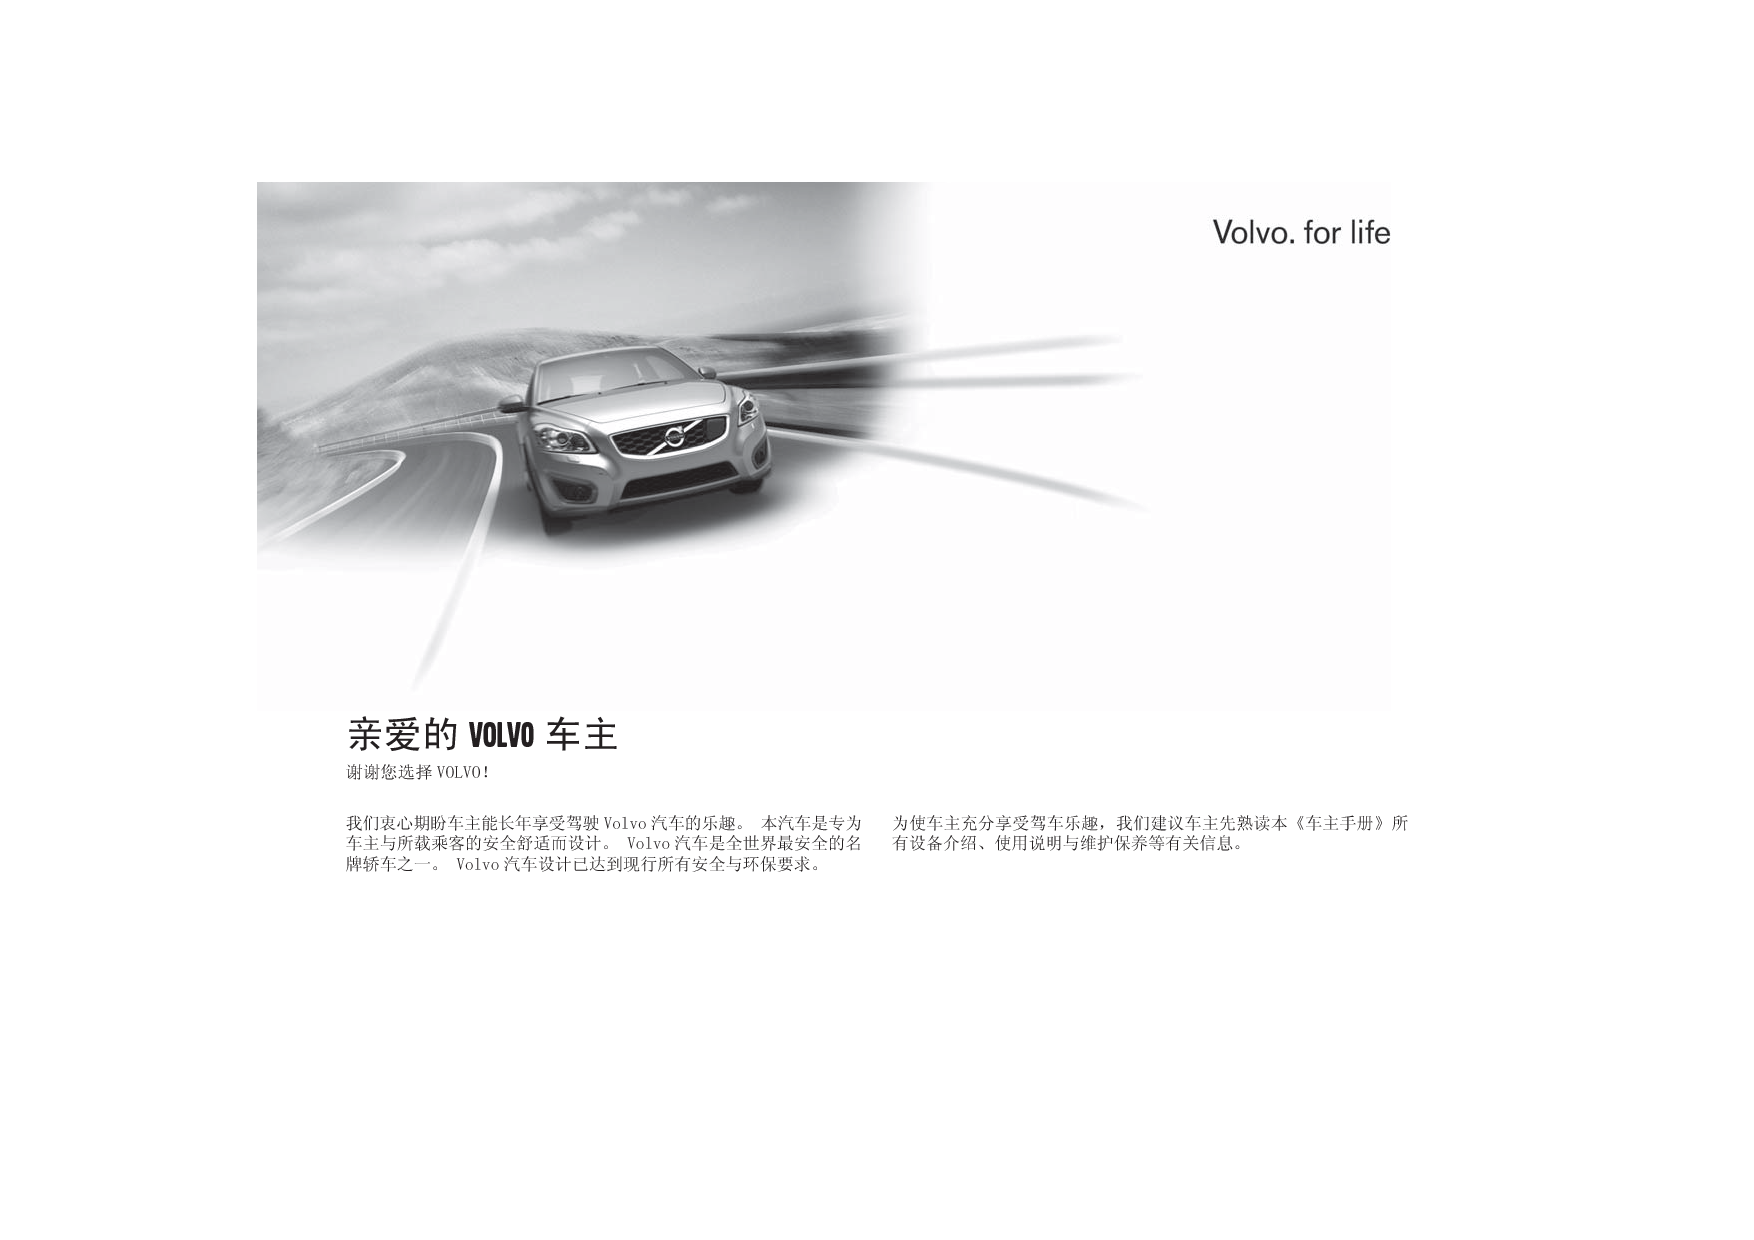 沃尔沃 Volvo S40 2012 用户手册 第1页